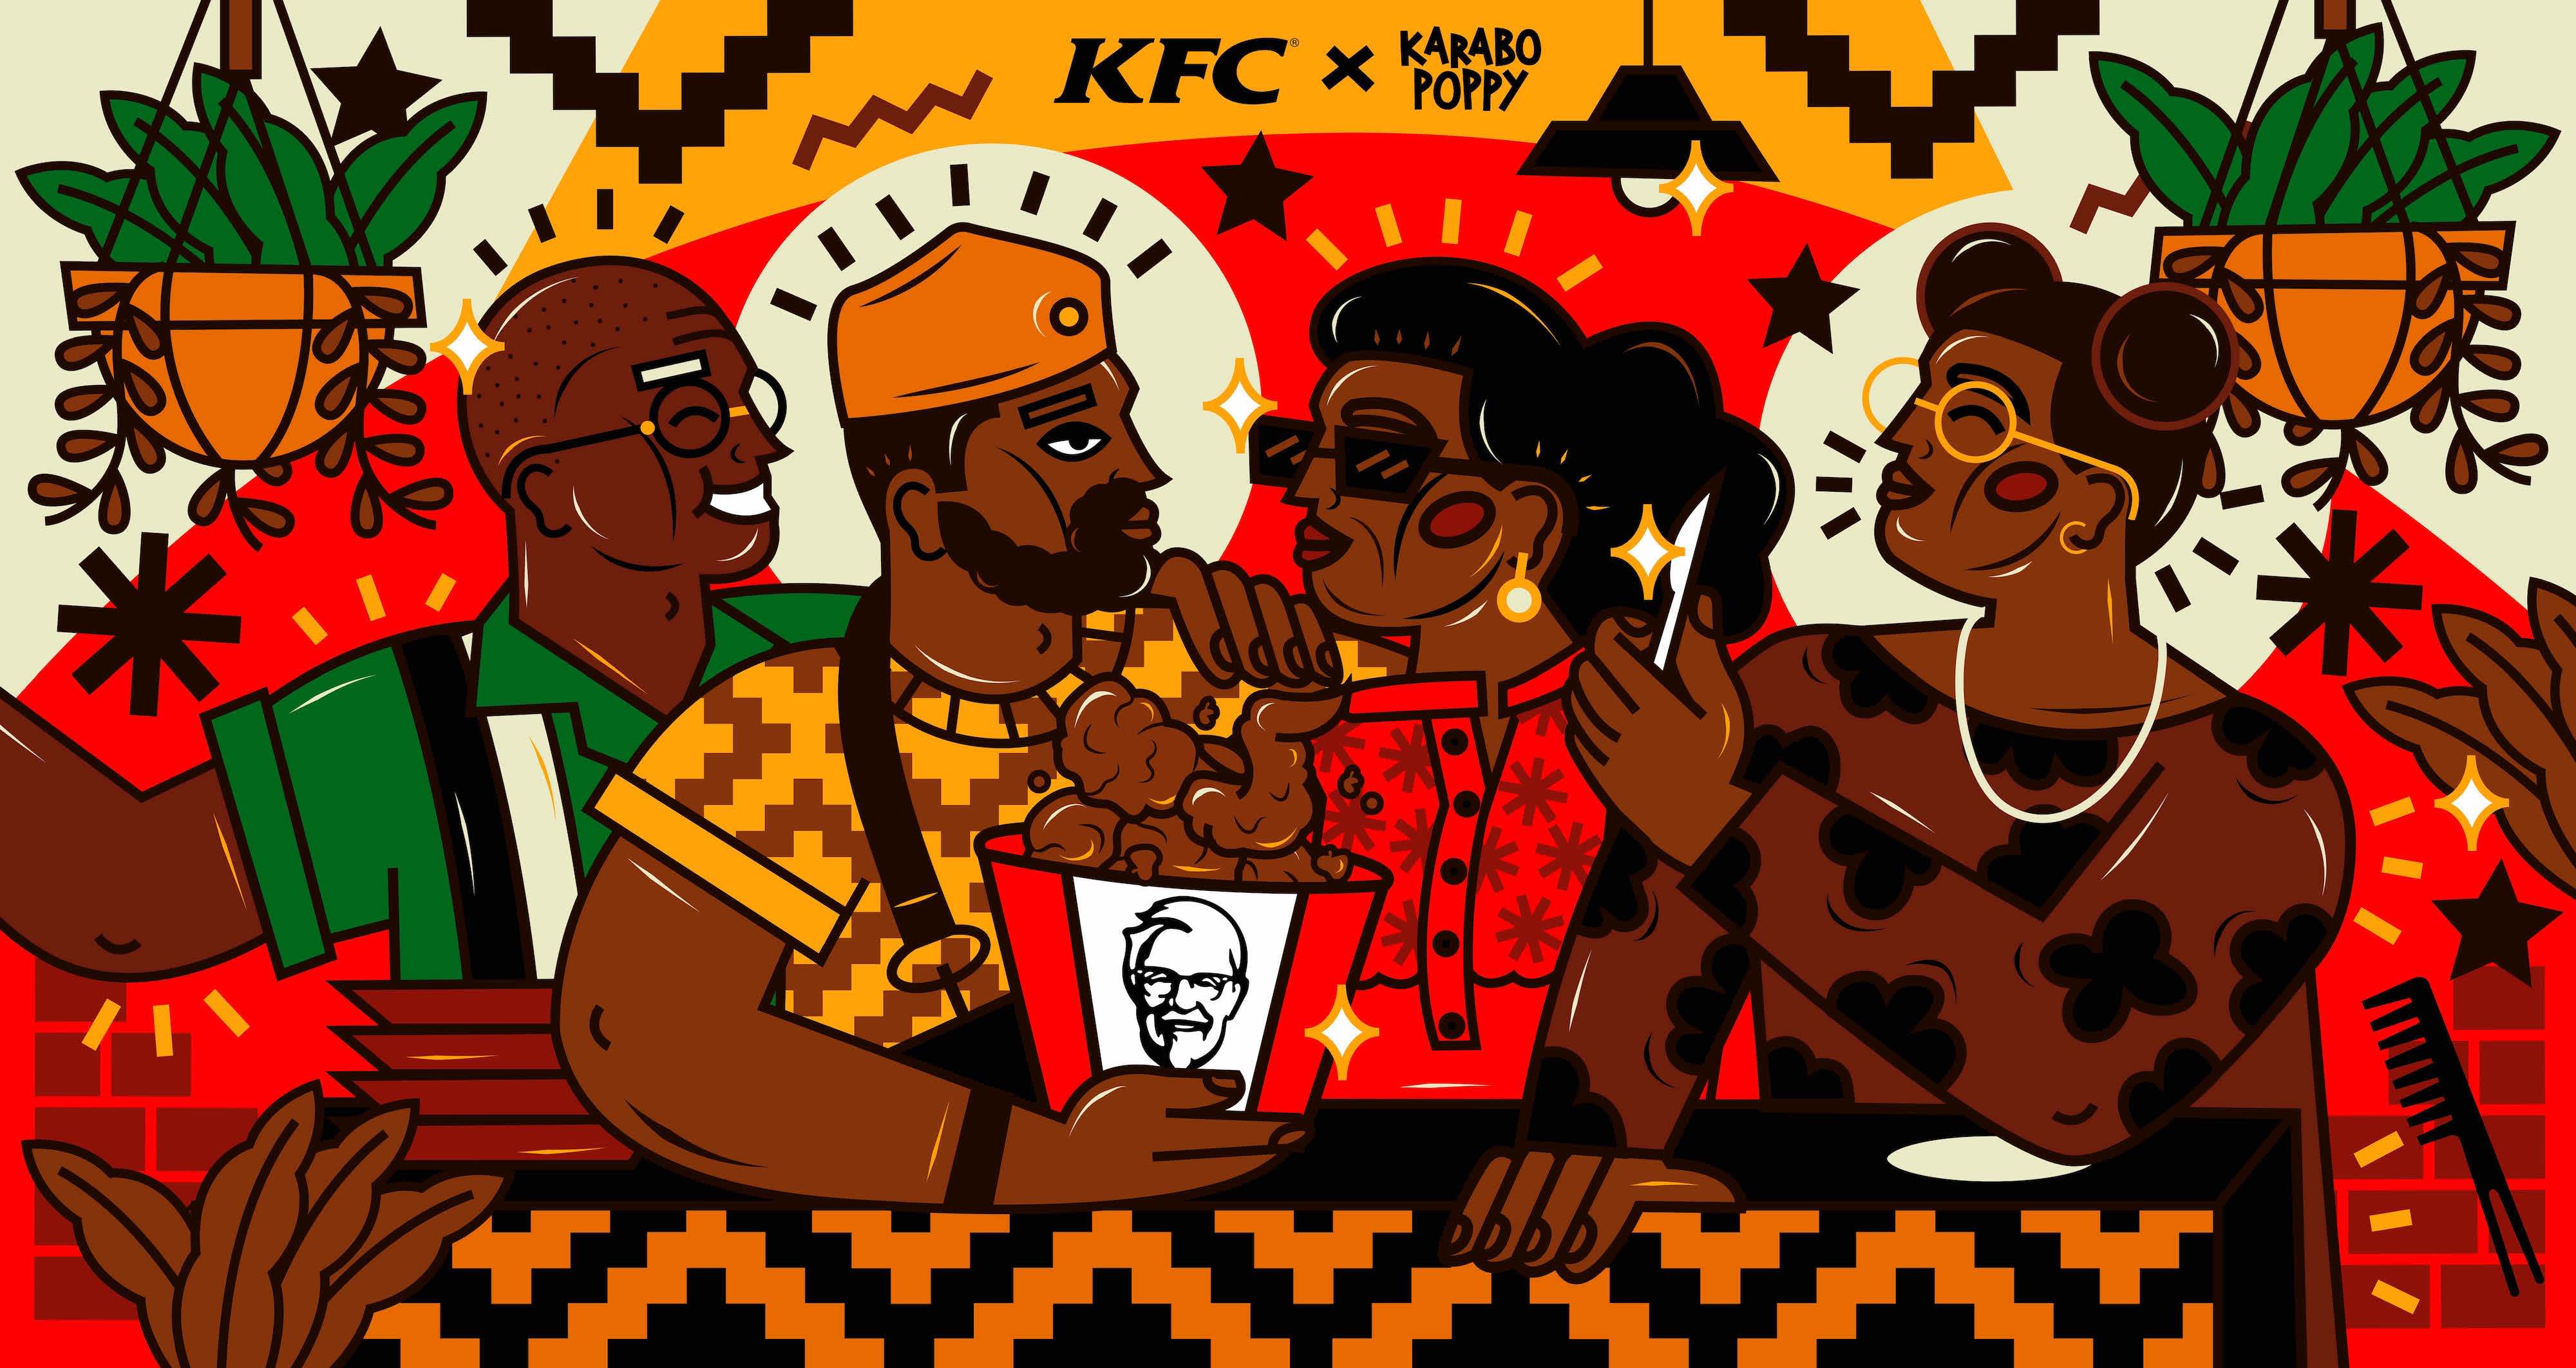 KFC (Mohale Family) 2 - Karabo Poppy